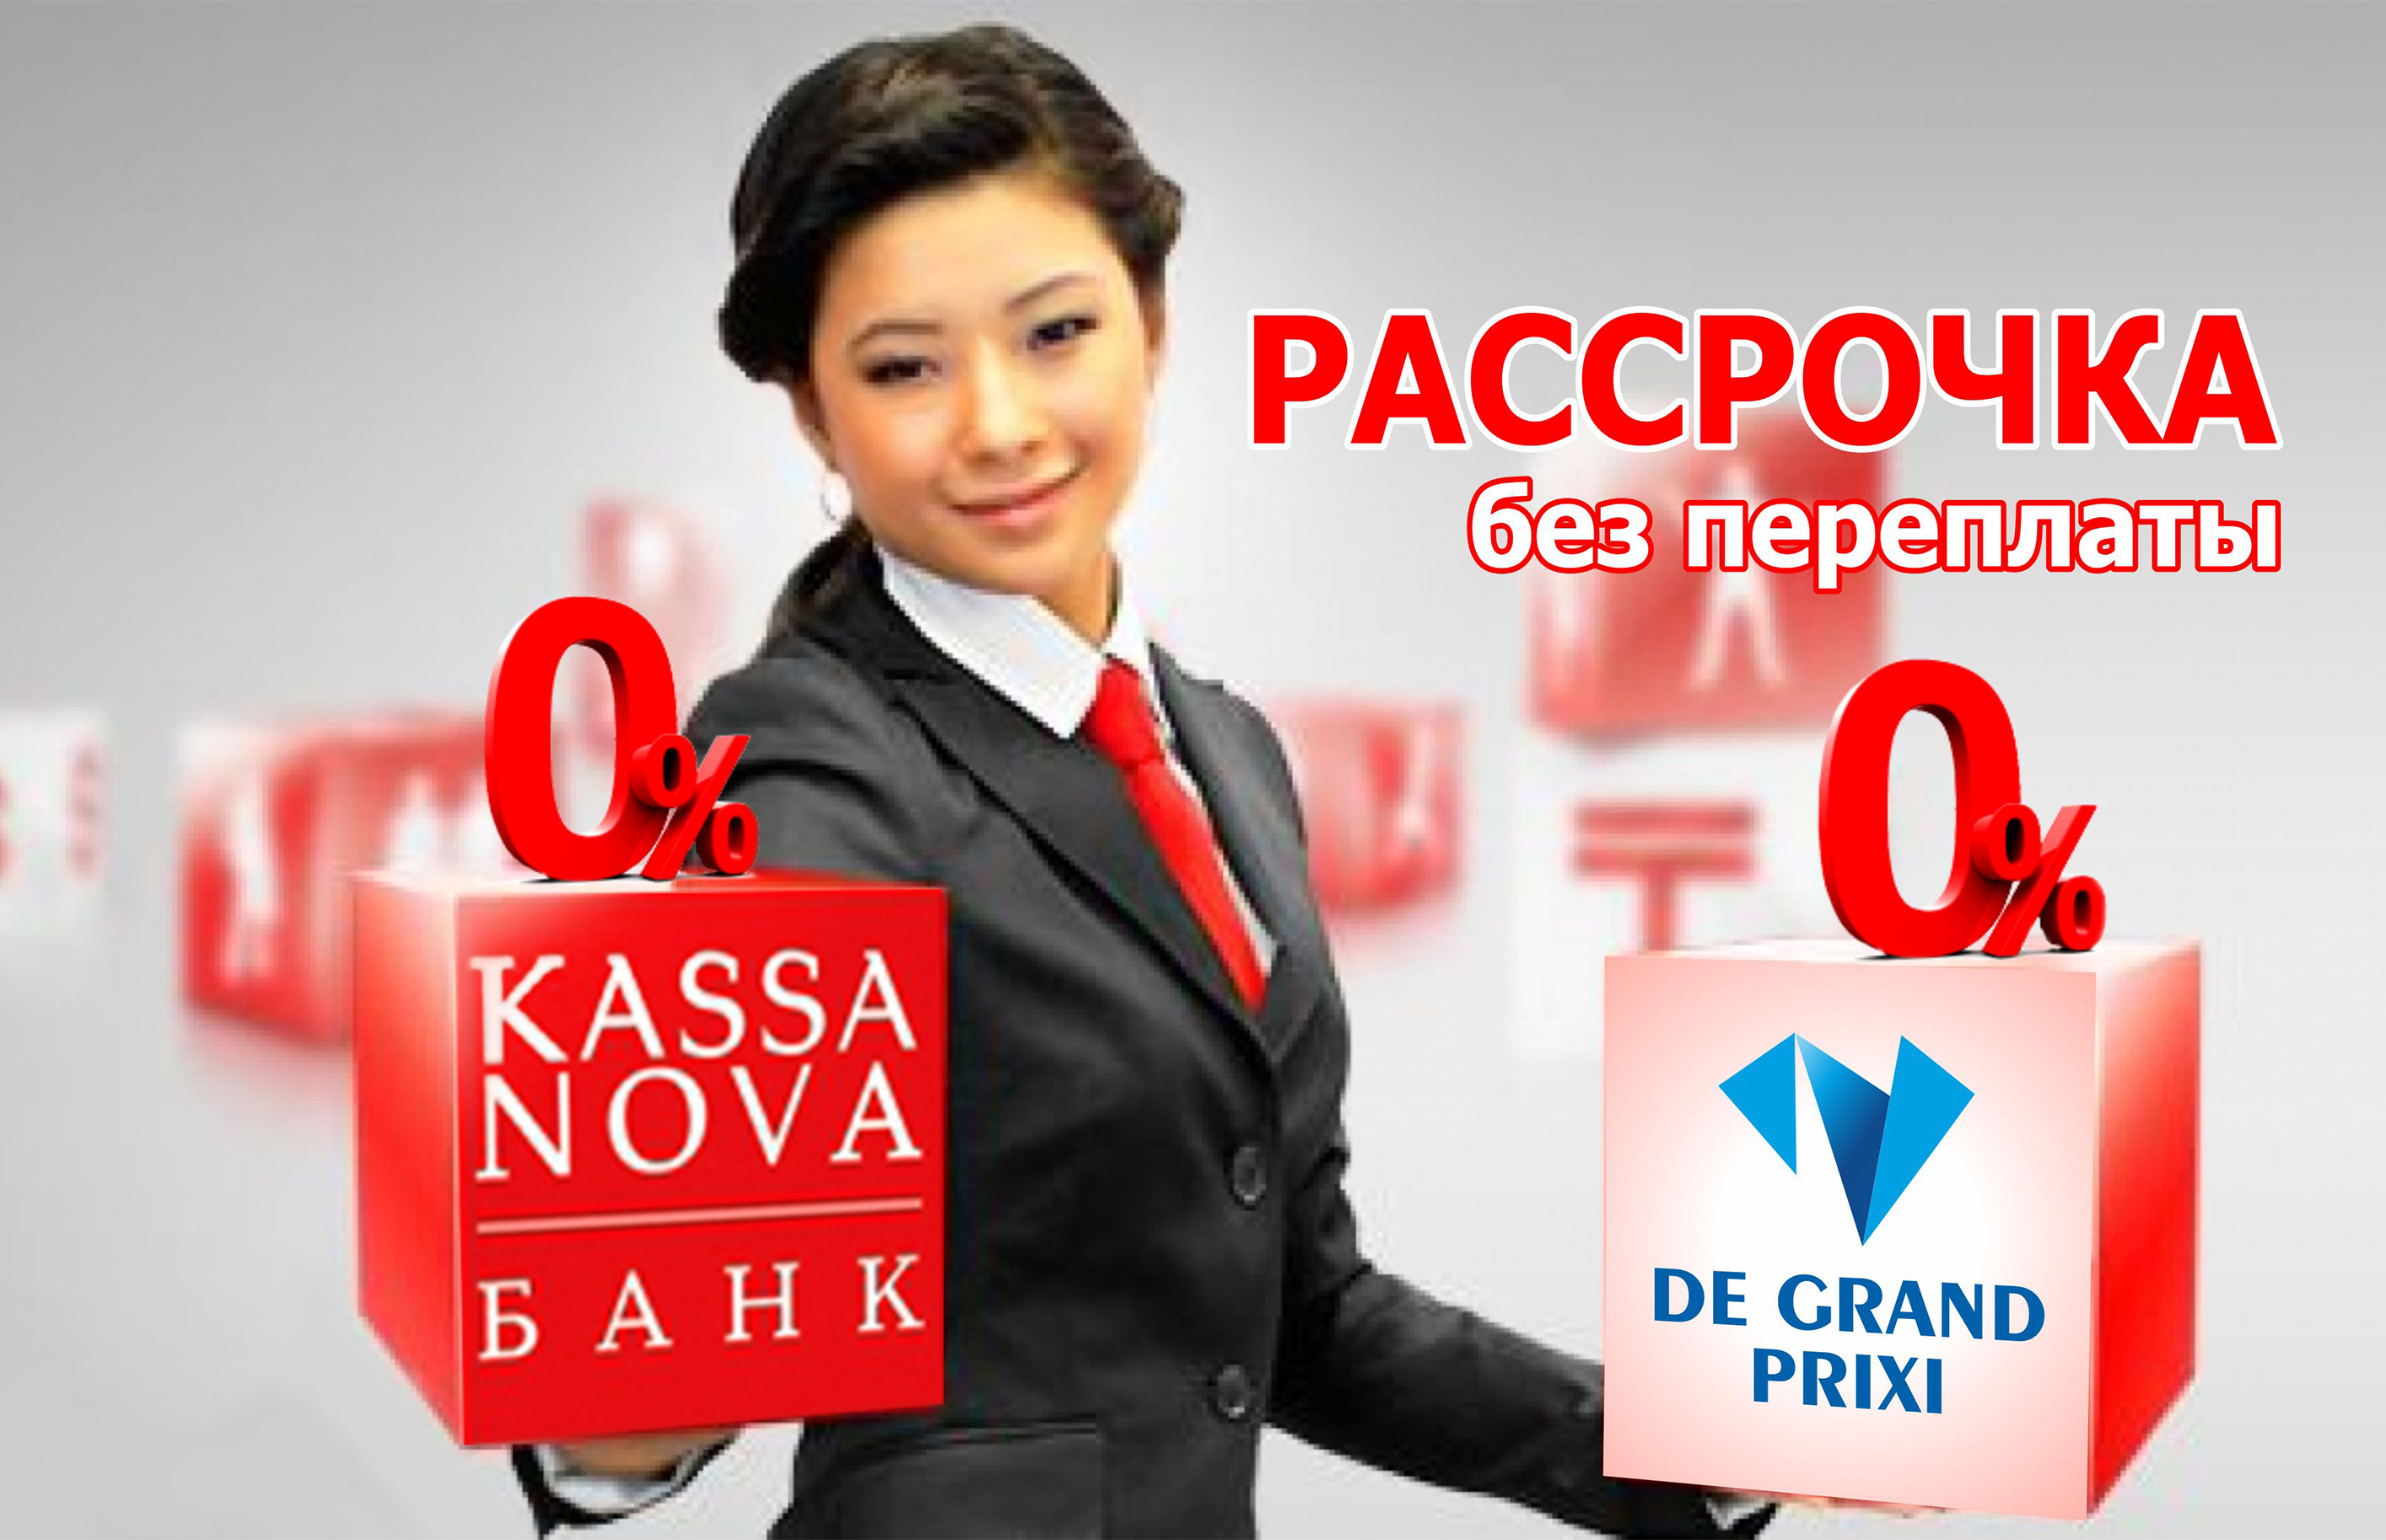 Рассрочка 0% от KASSA NOVA bank